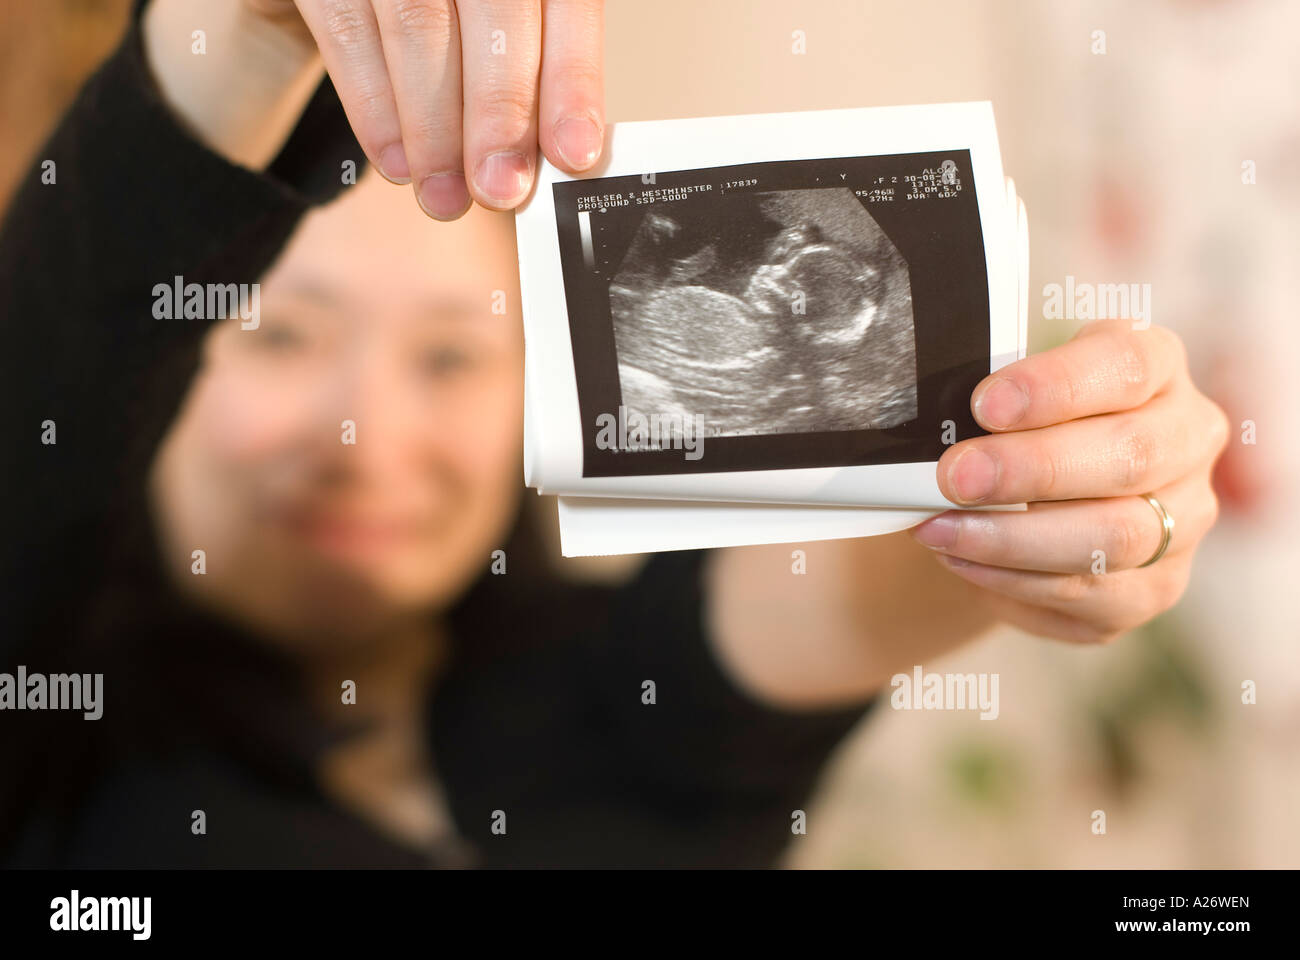 Japanese woman holding out l'échographie impression de son bébé Scan dans une mise au point nette mère dans soft focus derrière Banque D'Images